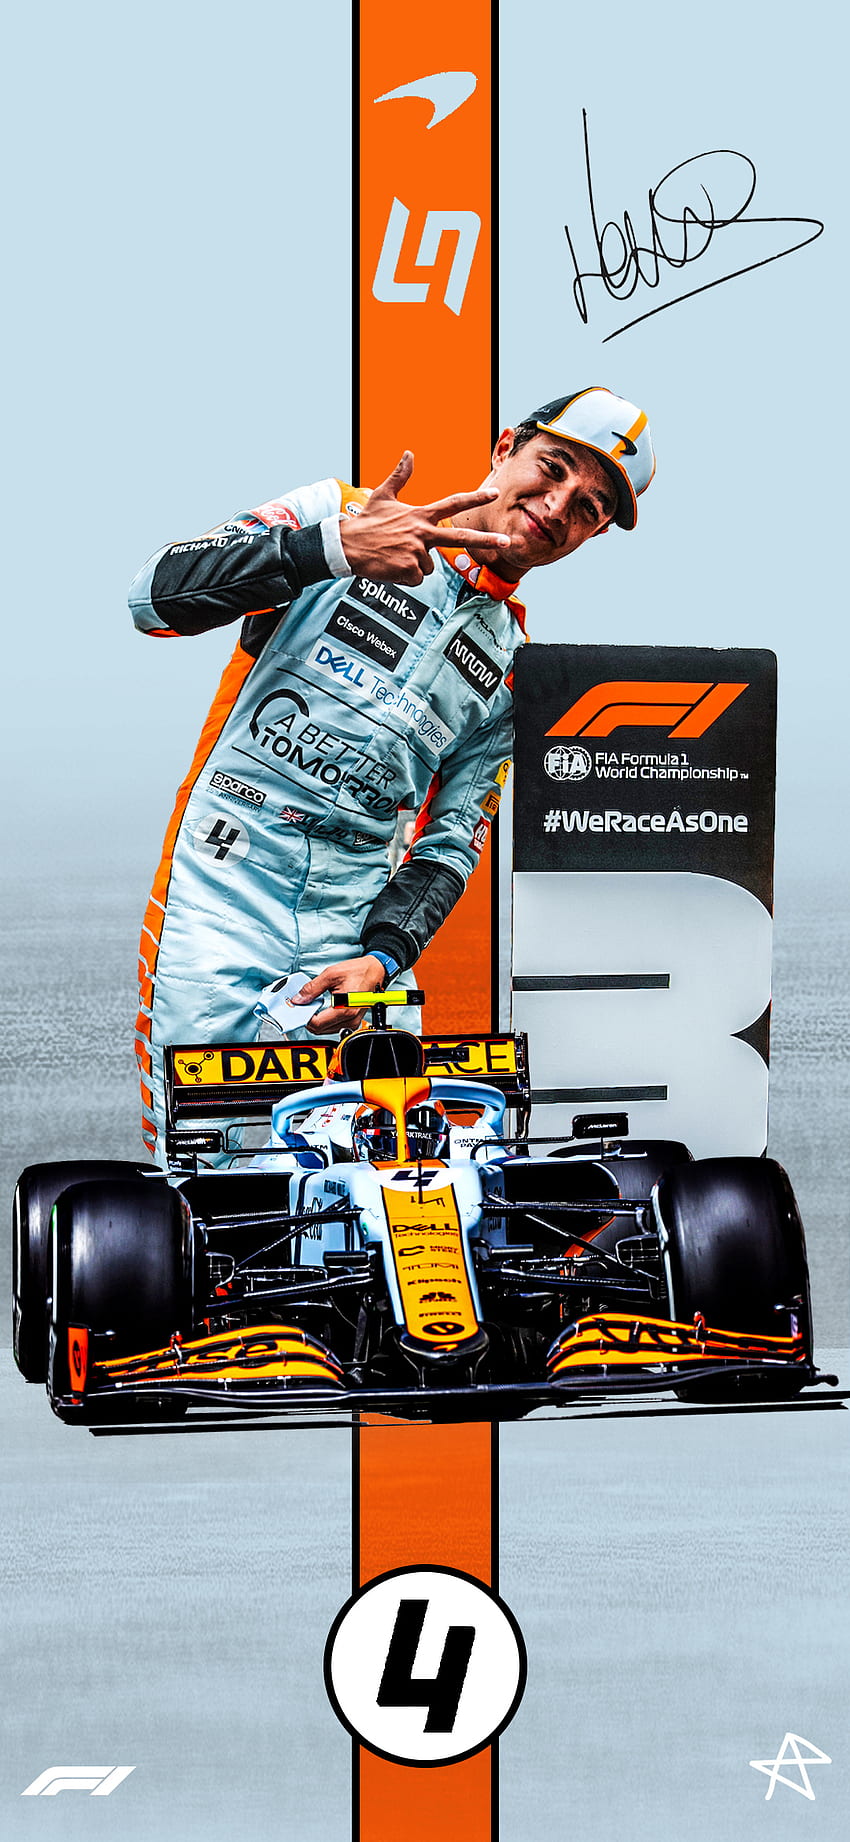 McLaren on Twitter MonacoGP wallpapers inbound  Weve got a special  one here too  httpstcoyphdlim0aV httpstcoPKOPJ7P88W  Twitter